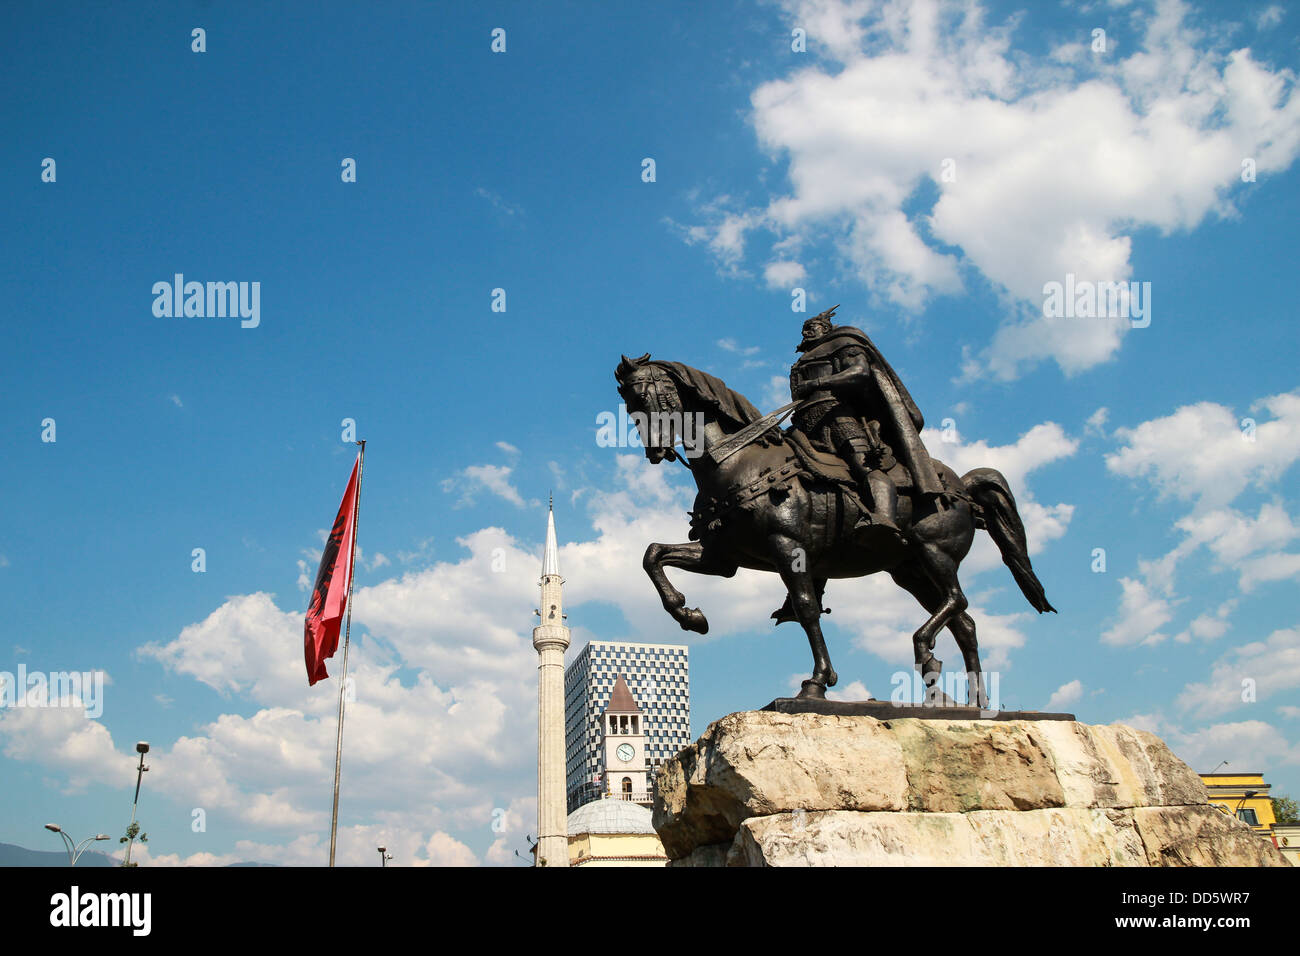 Héros national albanais statue george Kastrioti Skanderbeg sur son cheval, sur la place principale de Tirana, la capitale de l'albanie Banque D'Images